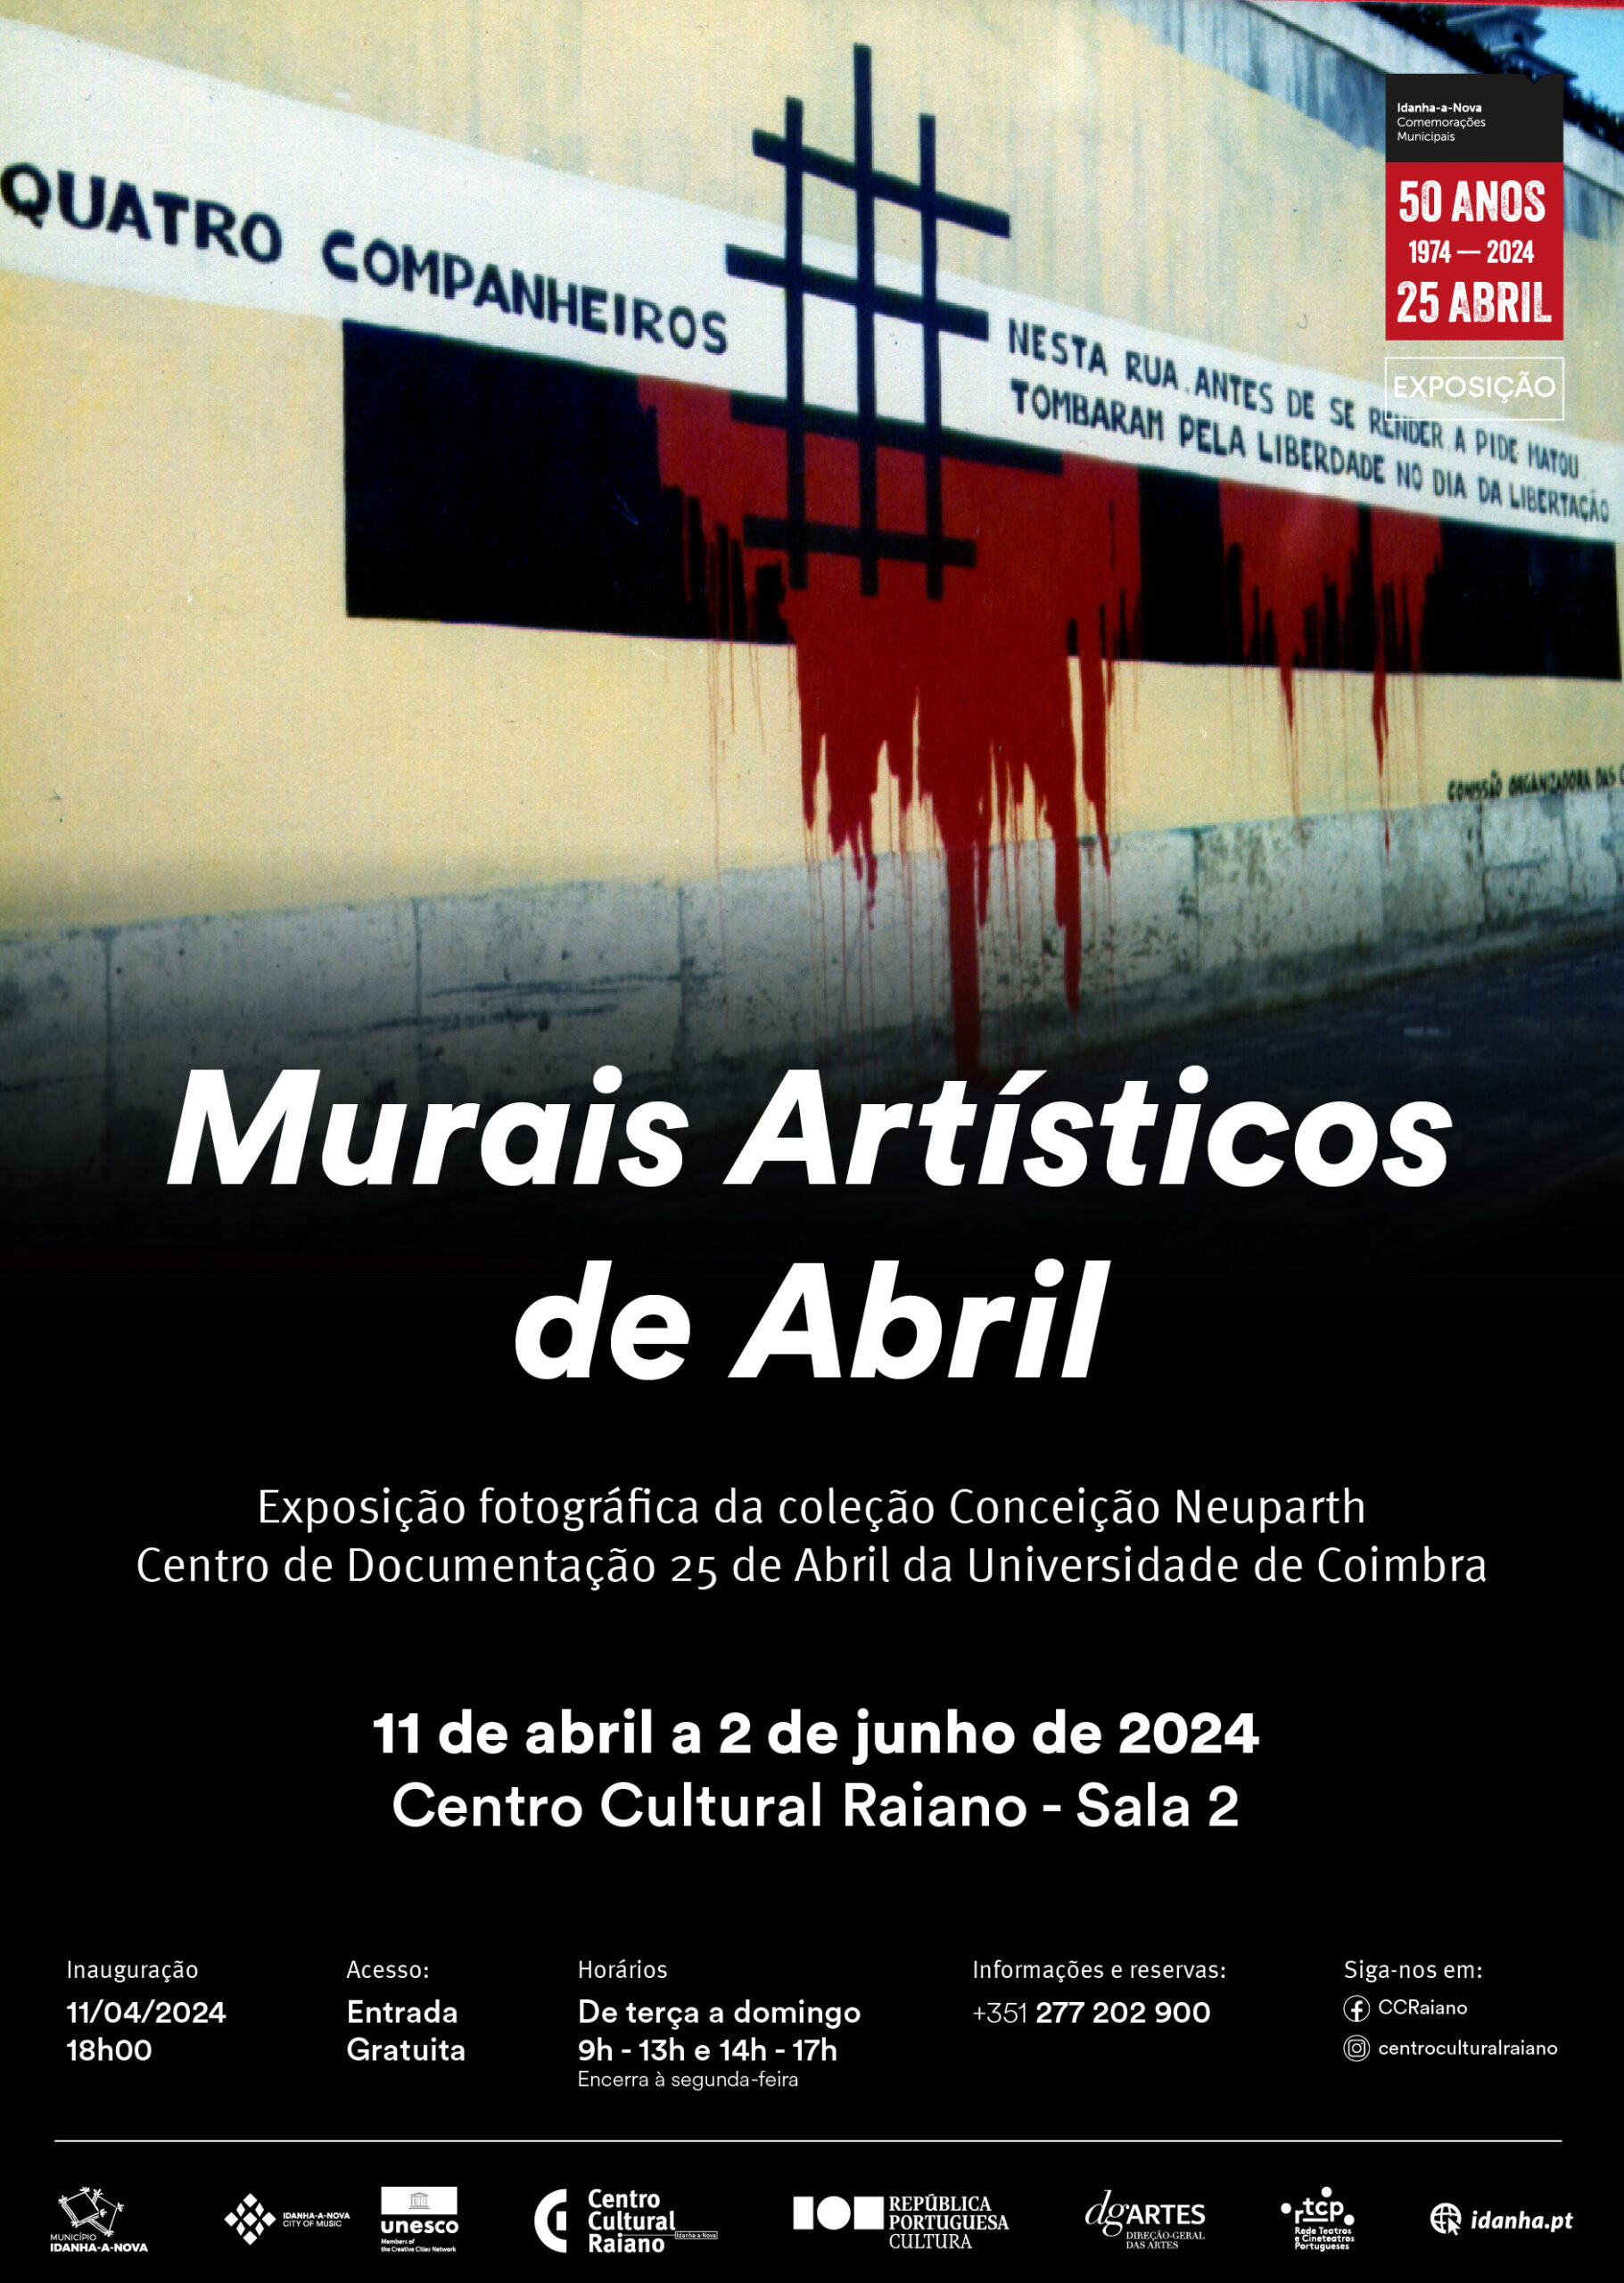 Capa Oficial do Evento Murais Artísticos de Abril - Coleção Conceição Neuparth